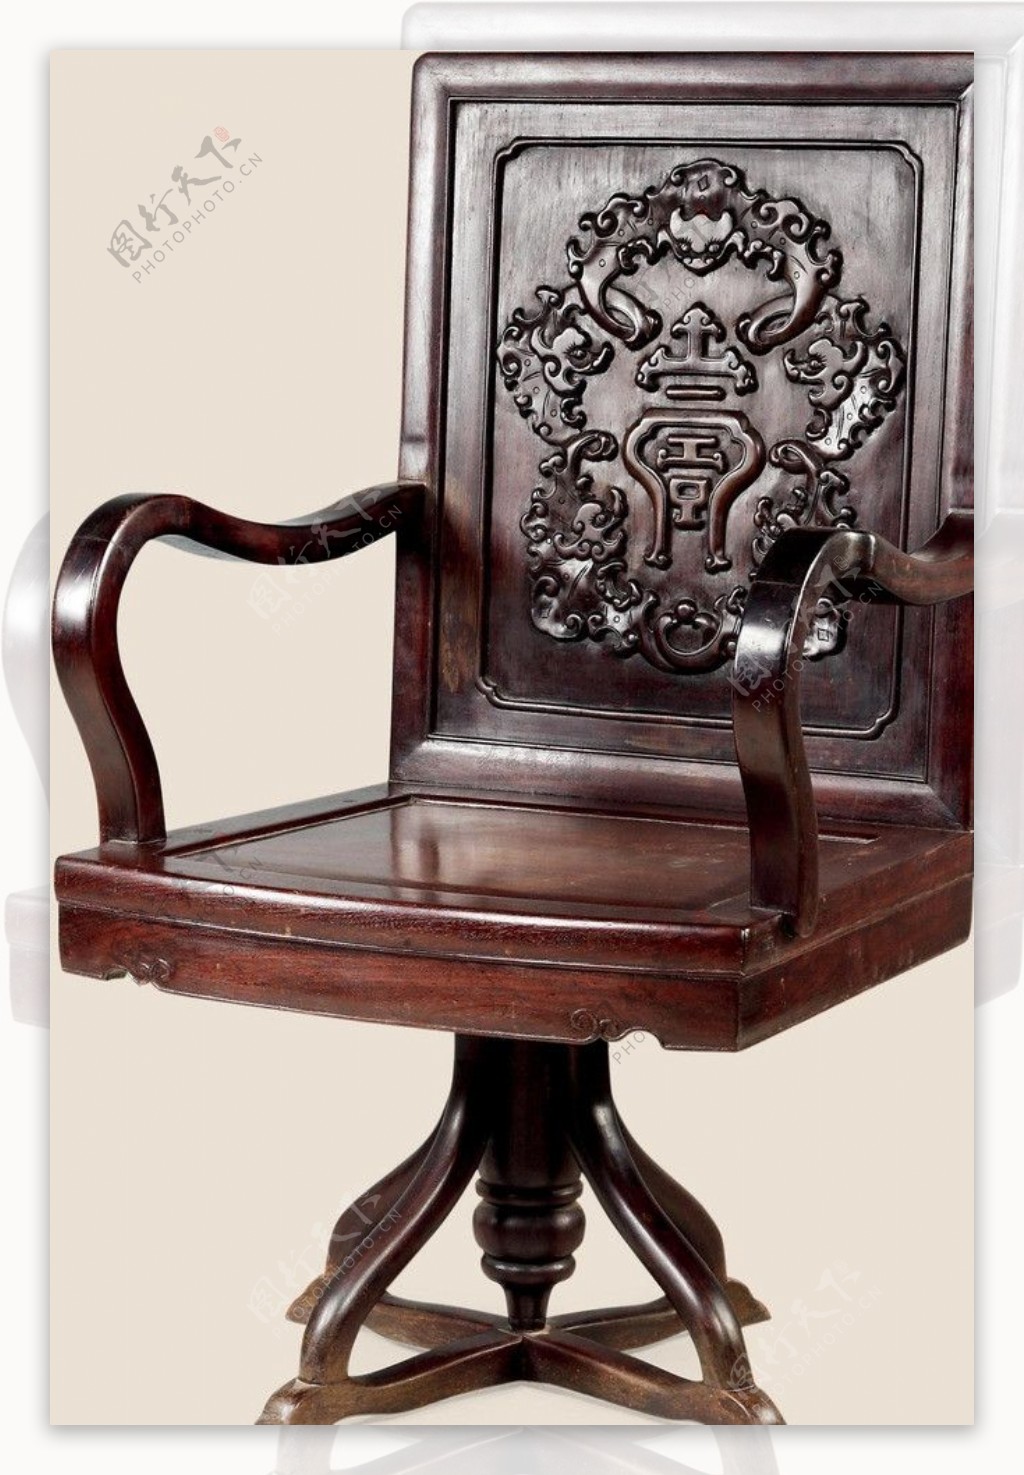 中式古典转椅图片